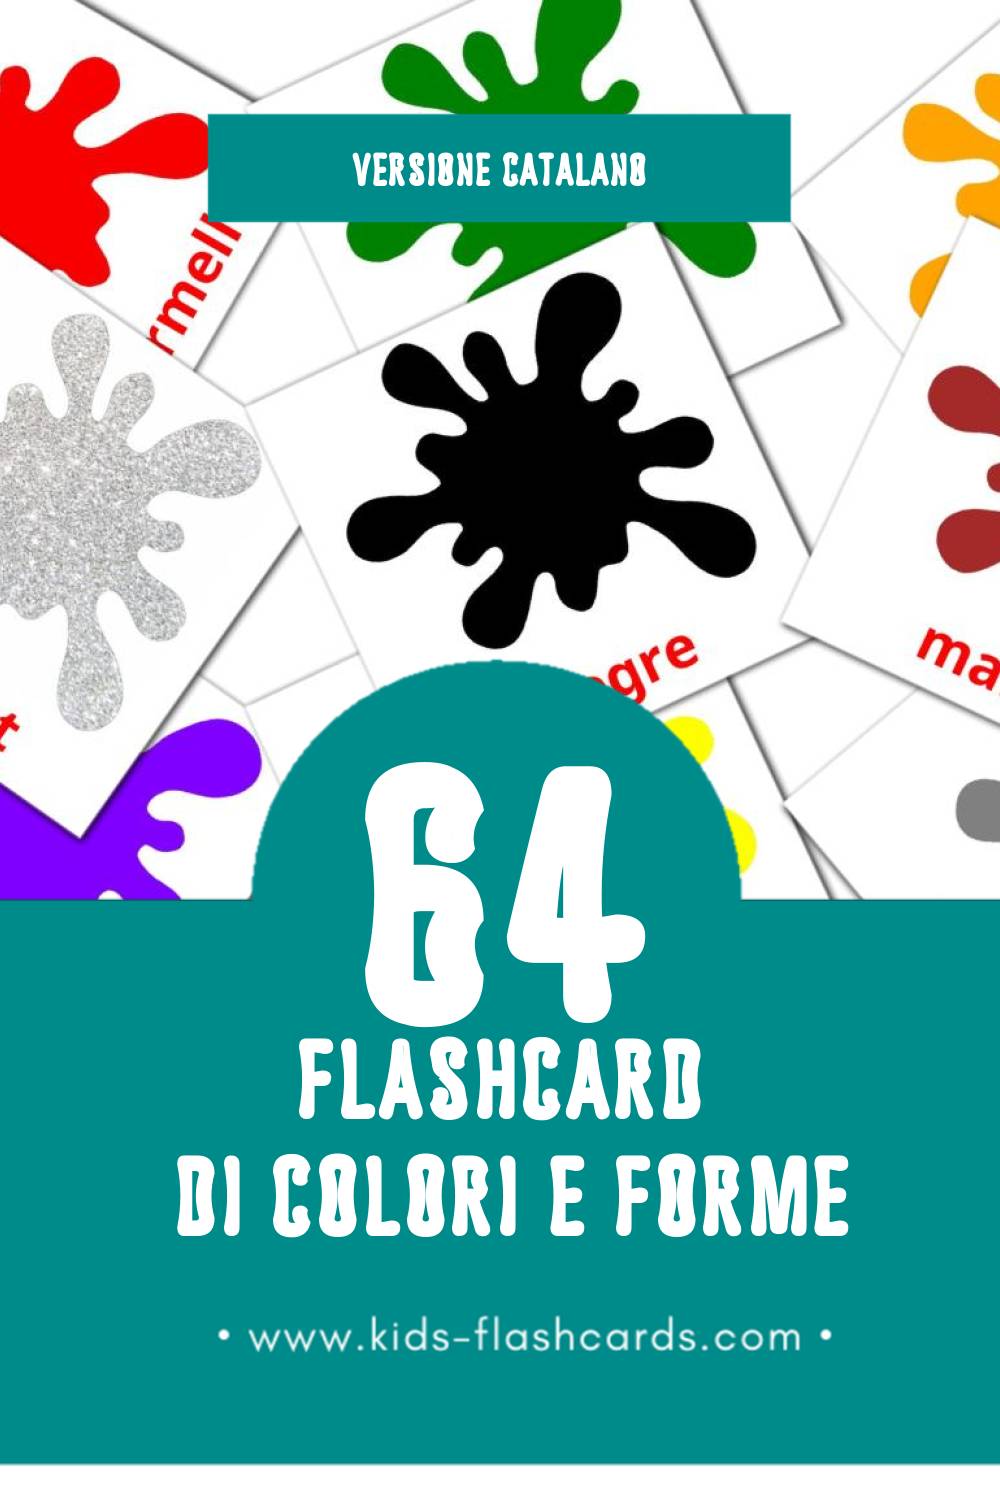 Schede visive sugli Colors per bambini (64 schede in Catalano)